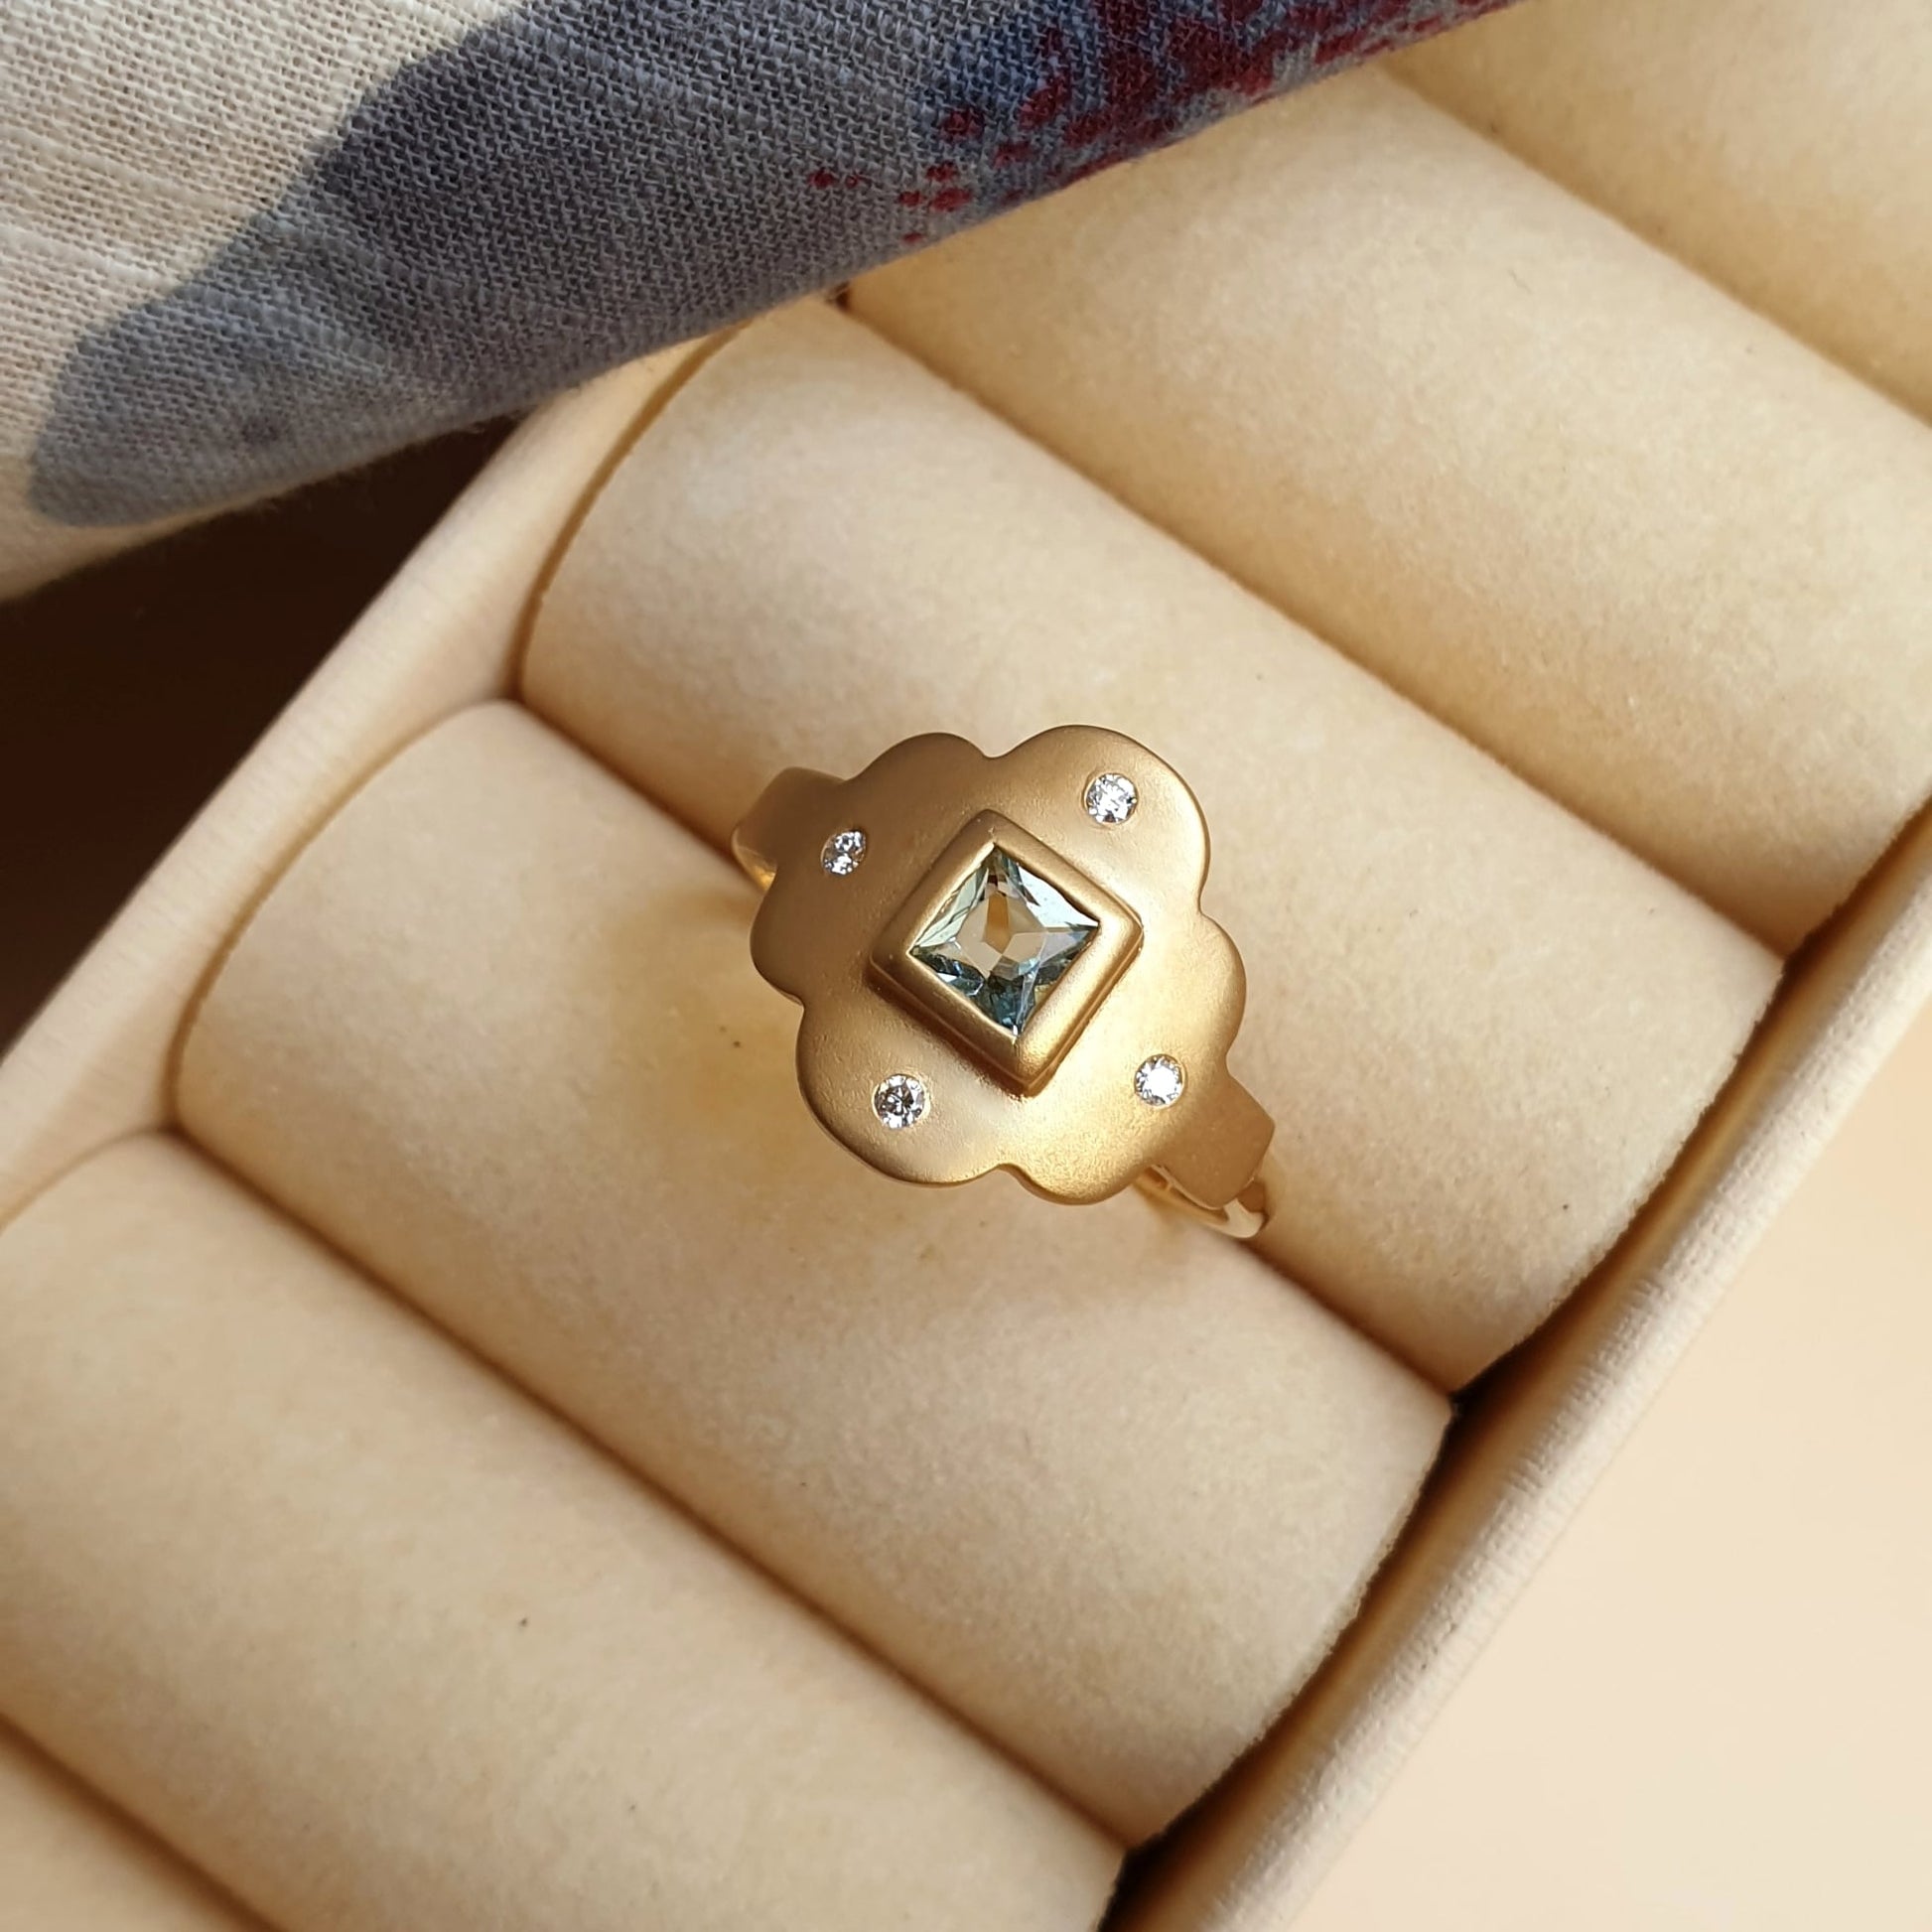 Detalle del anillo Isolda fabricado con oro Fairmined, diamantes y una aguamarina.